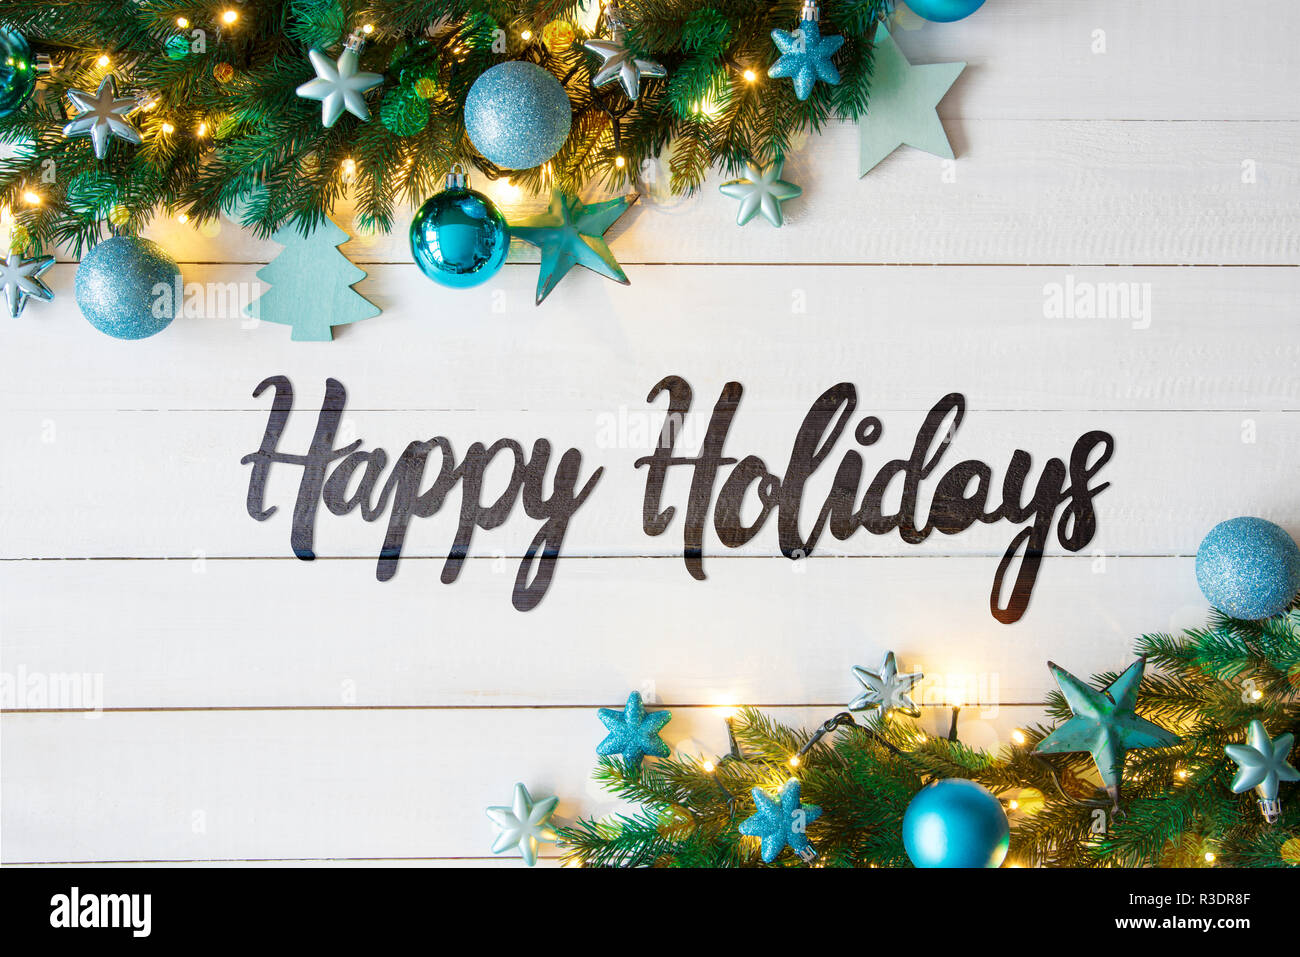 Weihnachten Banner mit englischen Kalligraphie frohe Feiertage. Tanne Baum mit blauen Kugeln und Weihnachtsdekoration. Weißen Holzmöbeln rustikal Hintergrund und Stockfoto